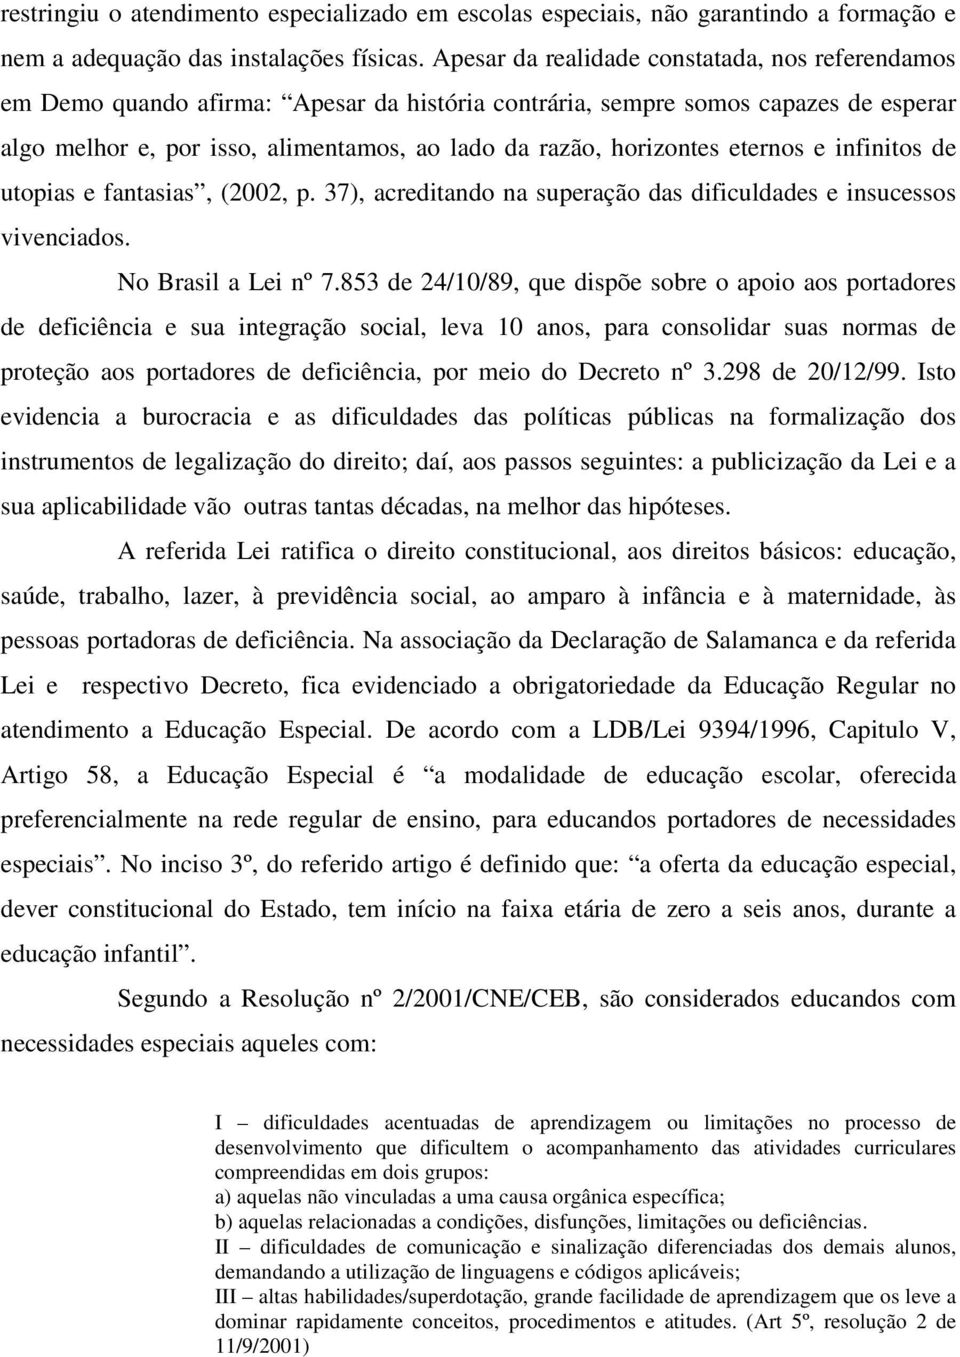 horizontes eternos e infinitos de utopias e fantasias, (2002, p. 37), acreditando na superação das dificuldades e insucessos vivenciados. No Brasil a Lei nº 7.